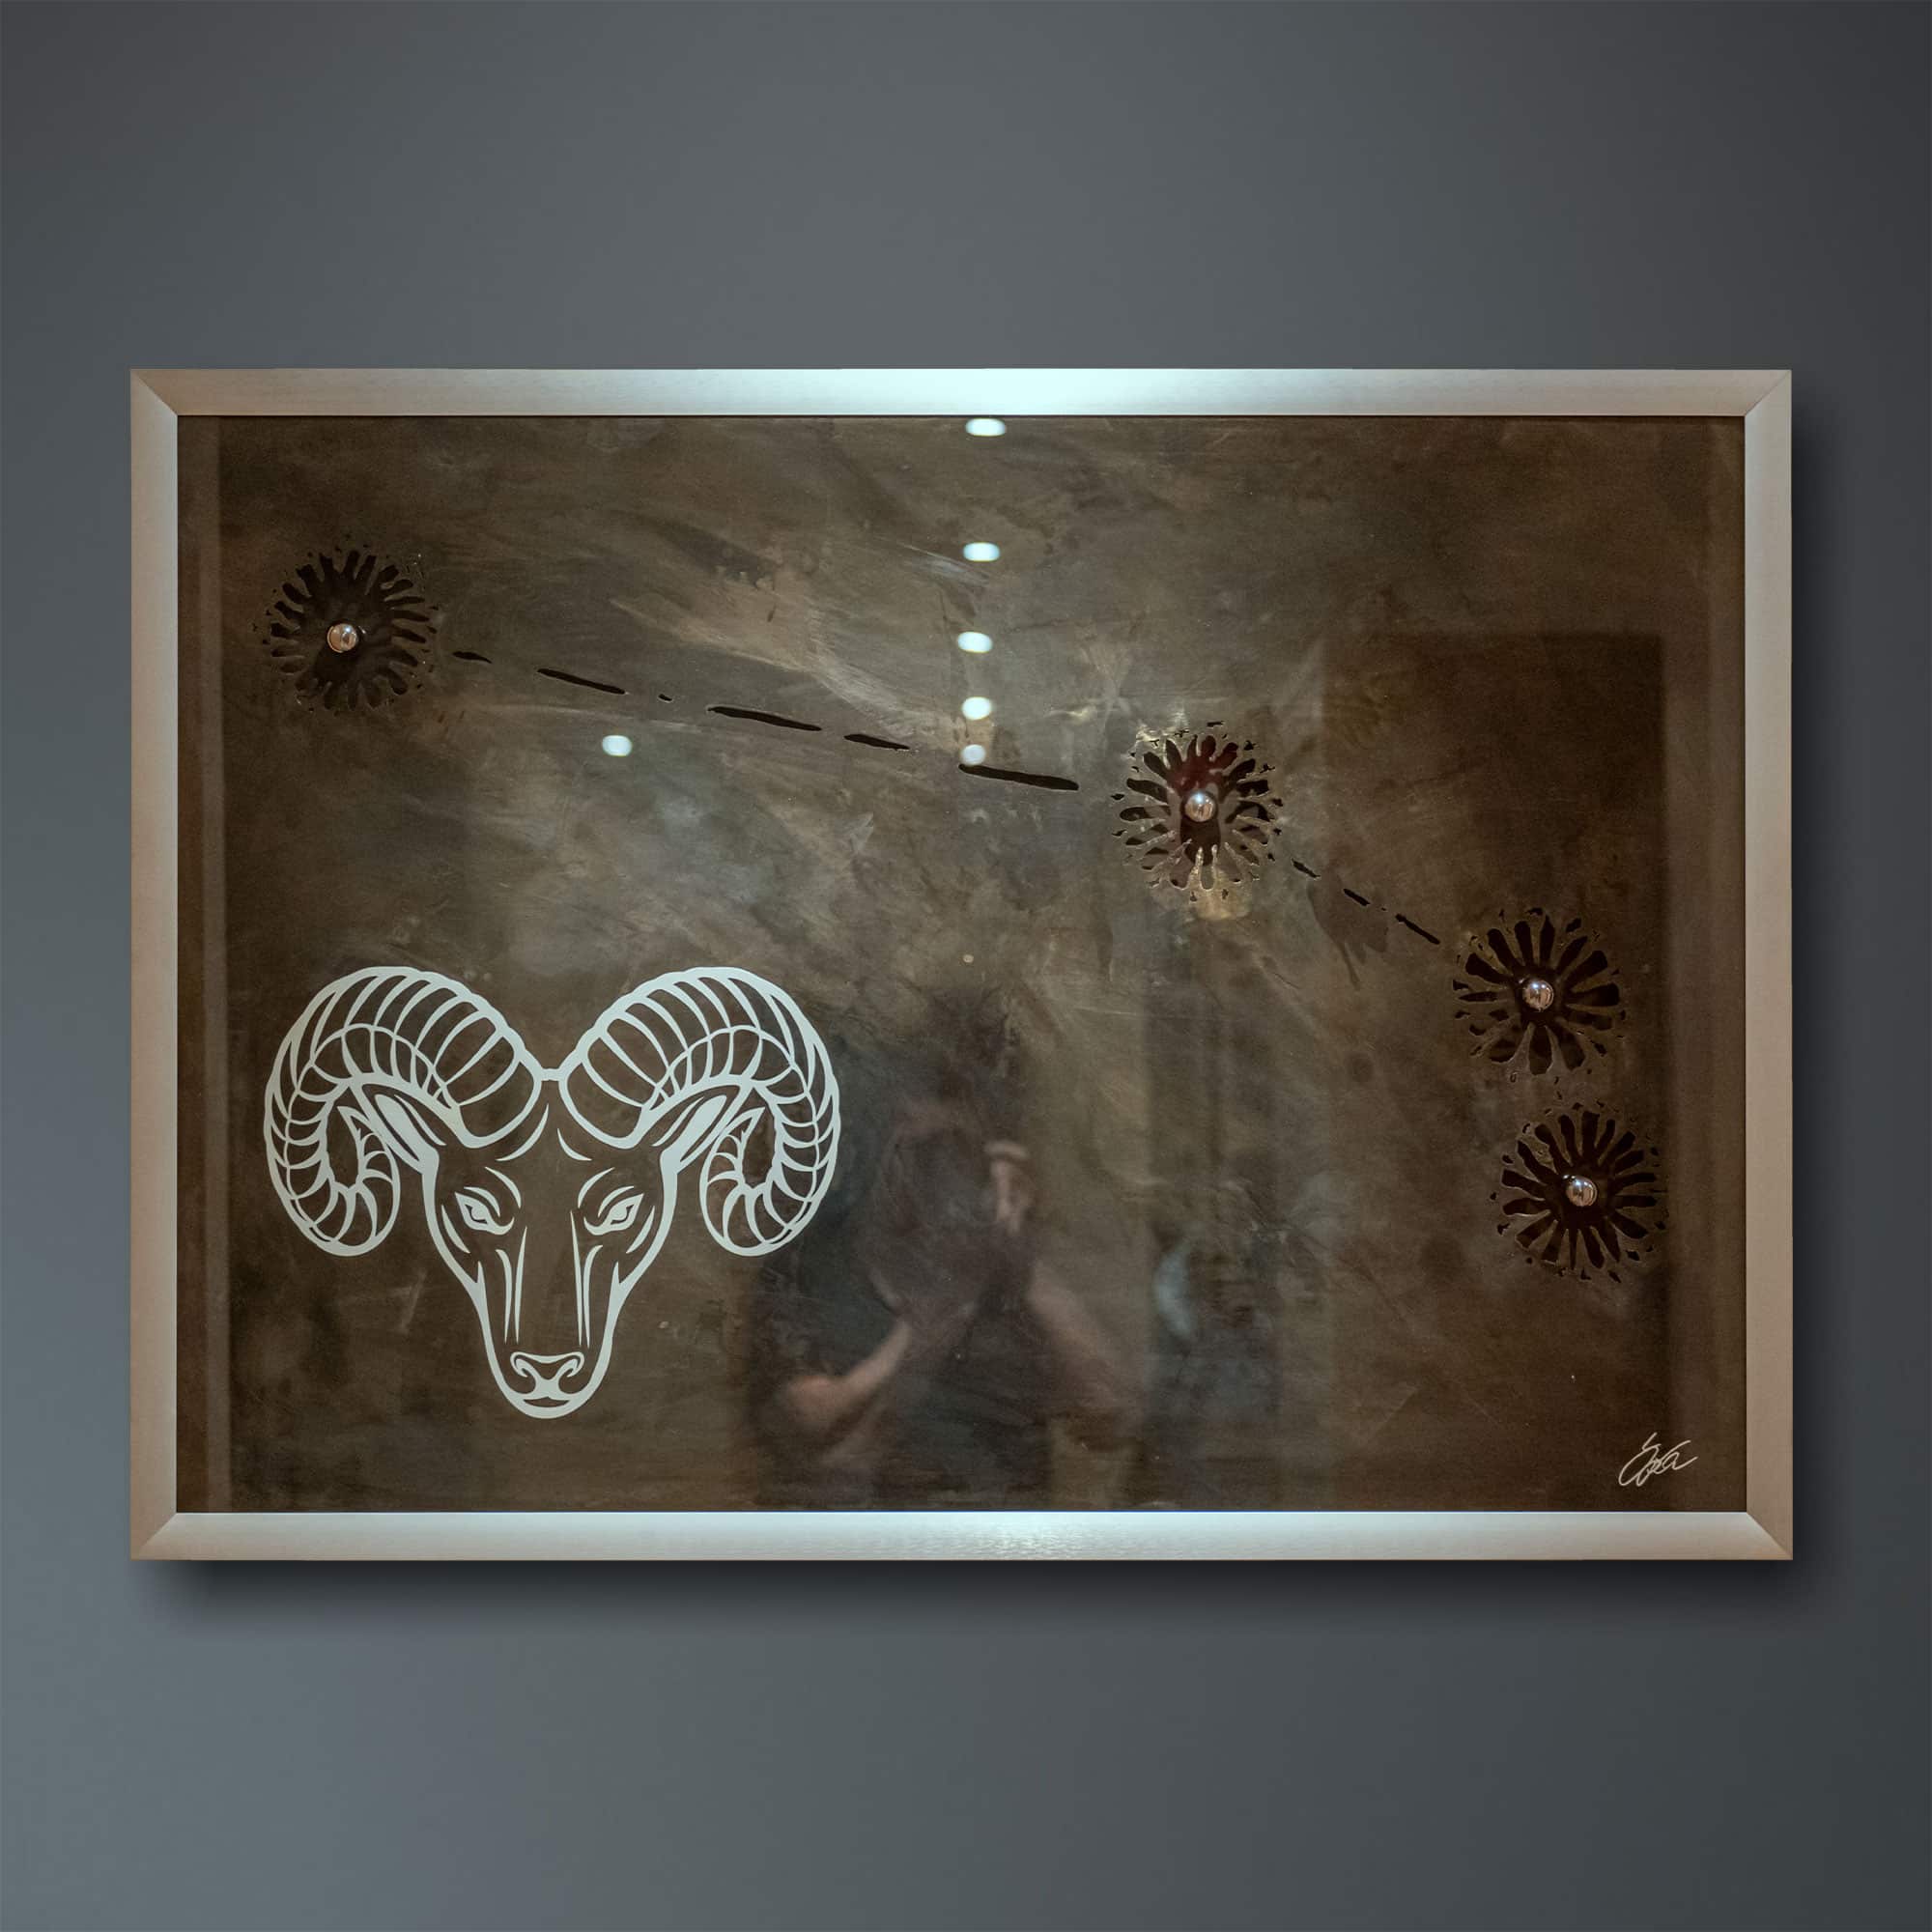 Stahlbild bzw. Bild aus Metall mit dem Namen „Widder“ aus der Reihe Sternbilder von Daniel Springer. Das Metallbild zeigt das Sternzeichen des Widder.